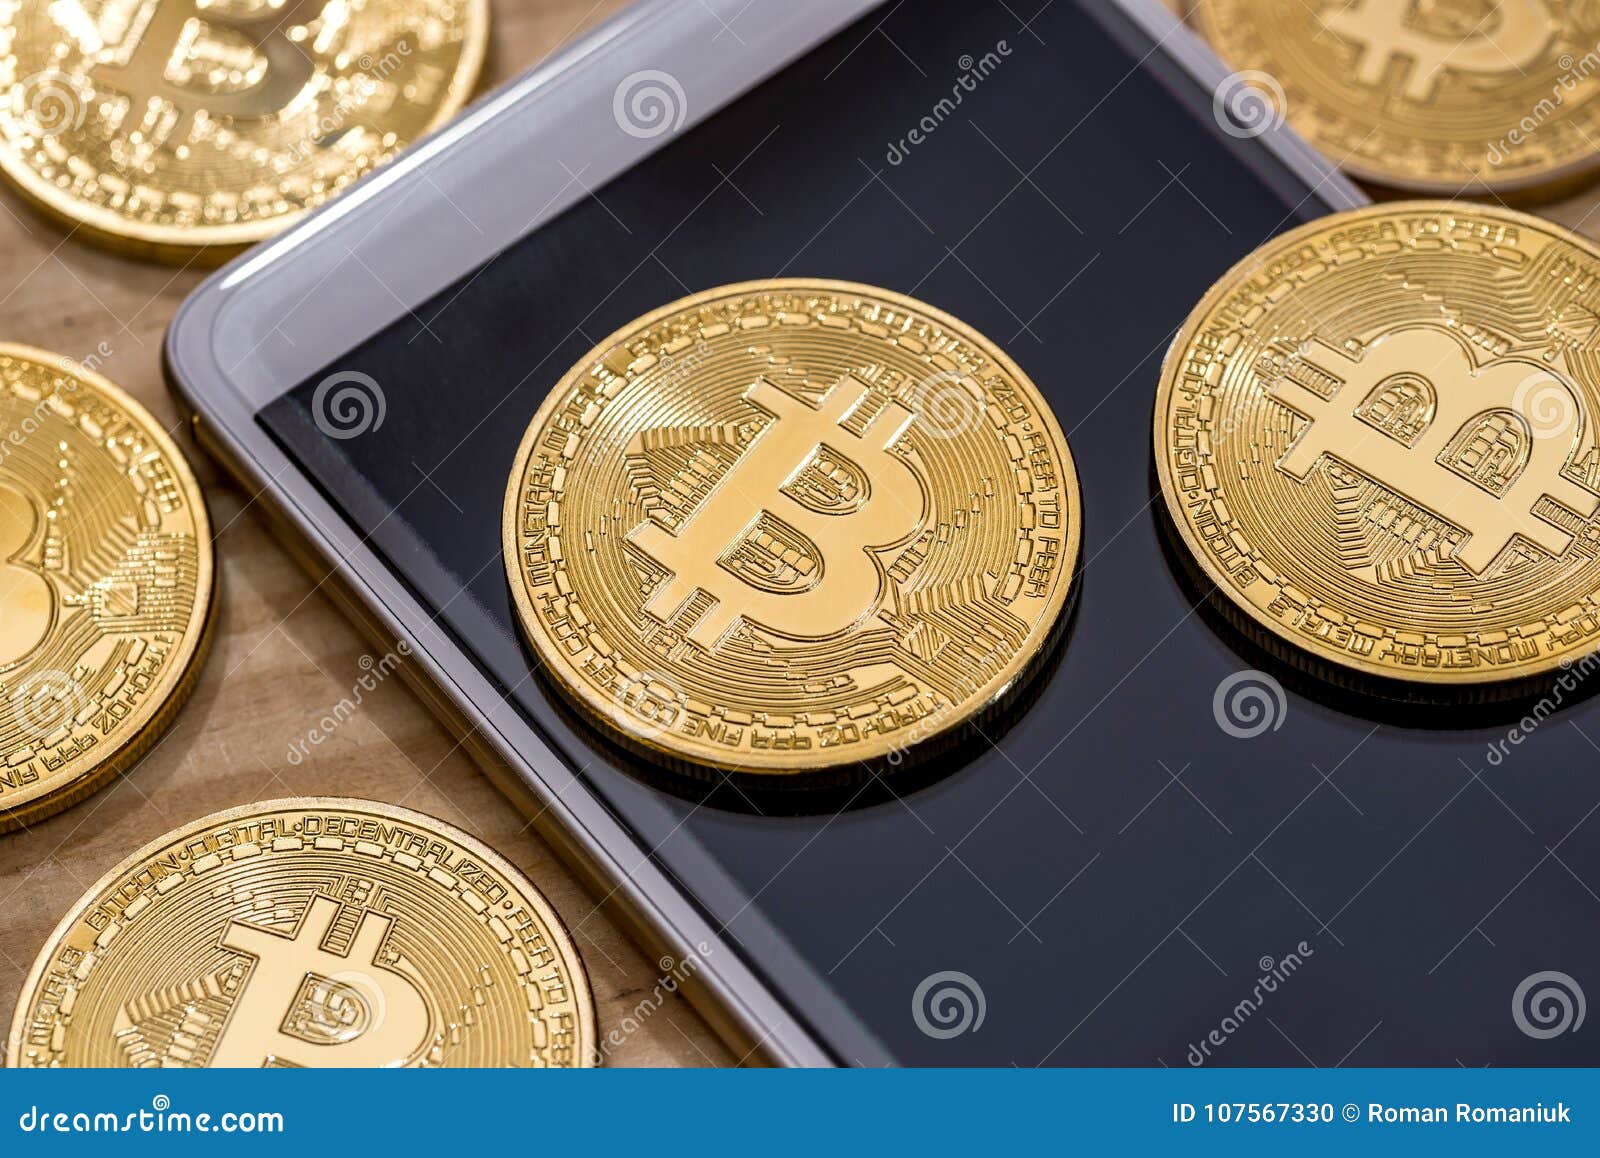 Bitcoin by phone виджет биткоин windows 10